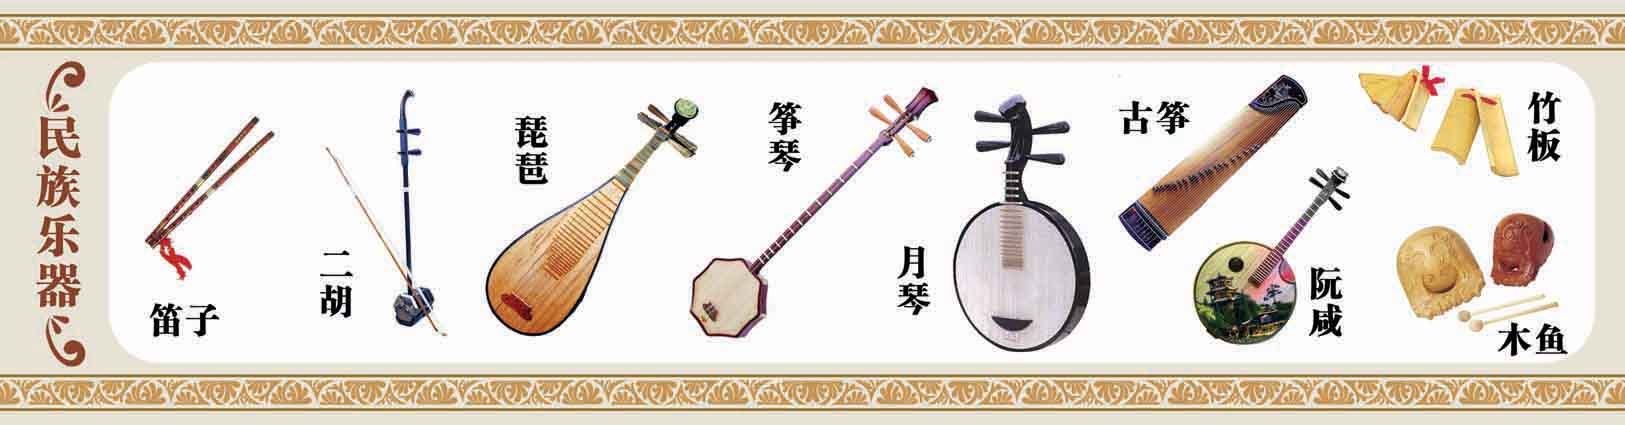 音乐装饰画 中国民族乐器海报定制 琴行装饰画 各类乐器图26a